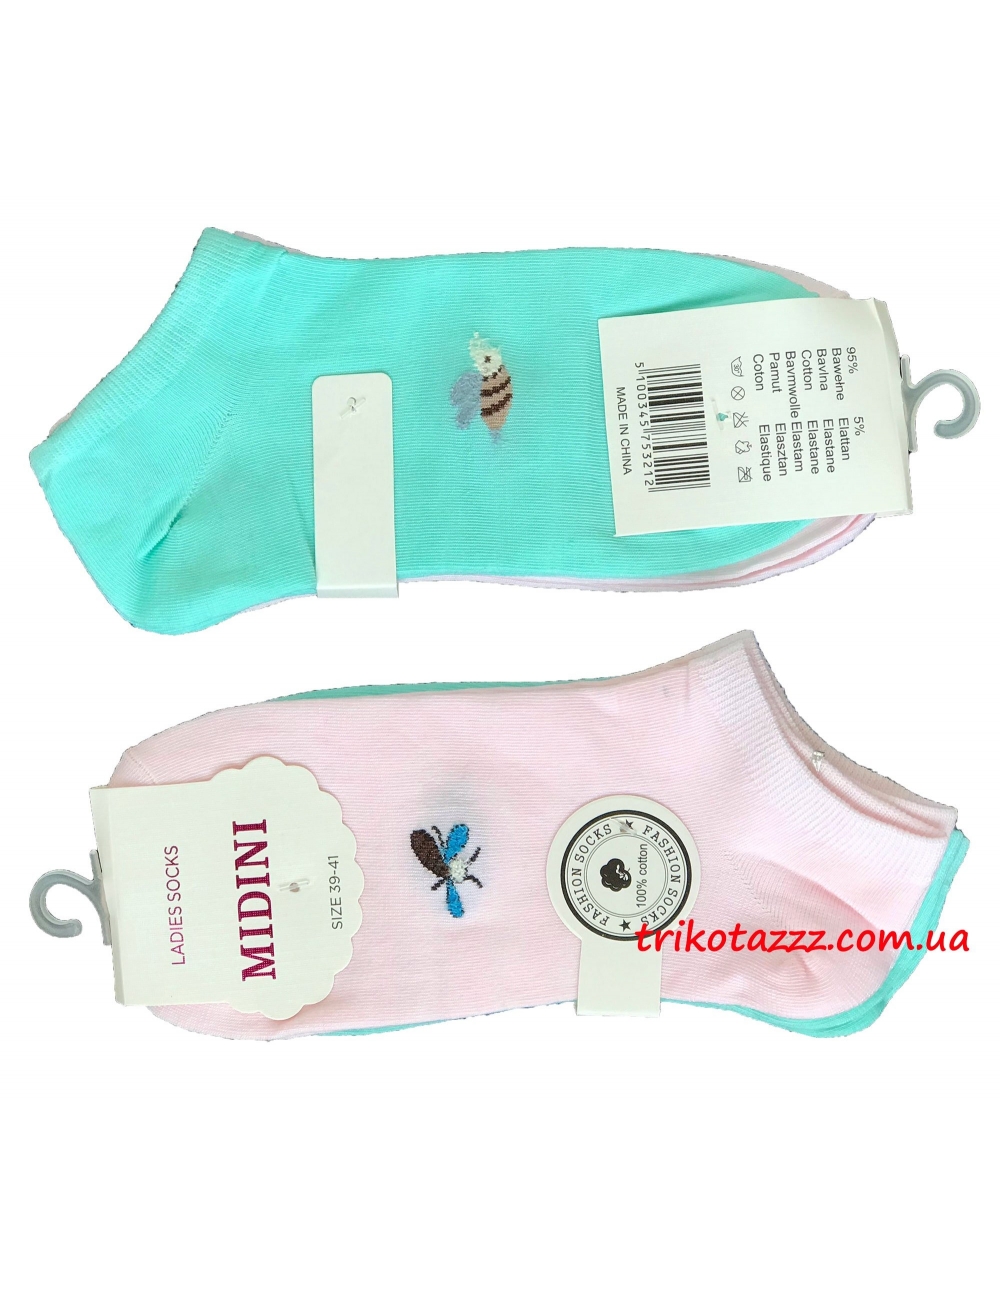 Набор носков для девочек (подростков) 2 пары Midini бирюзовые+розовые